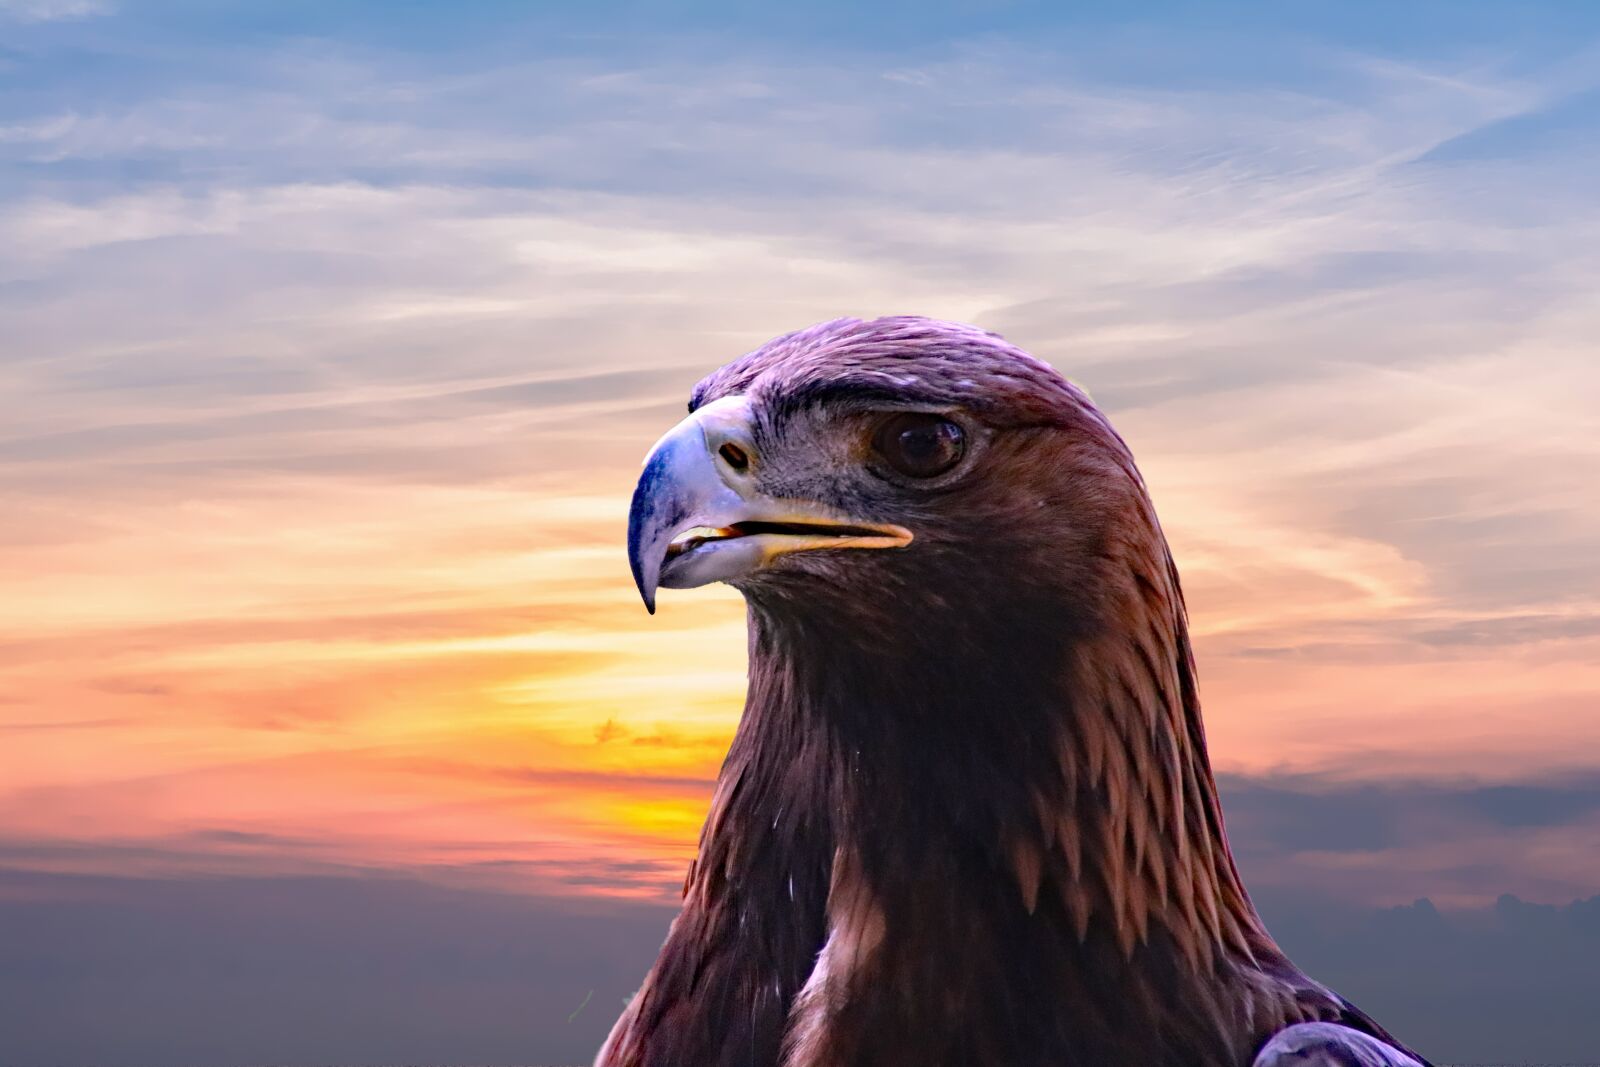 Canon EOS 80D sample photo. Golden eagle, eagle, bird photography